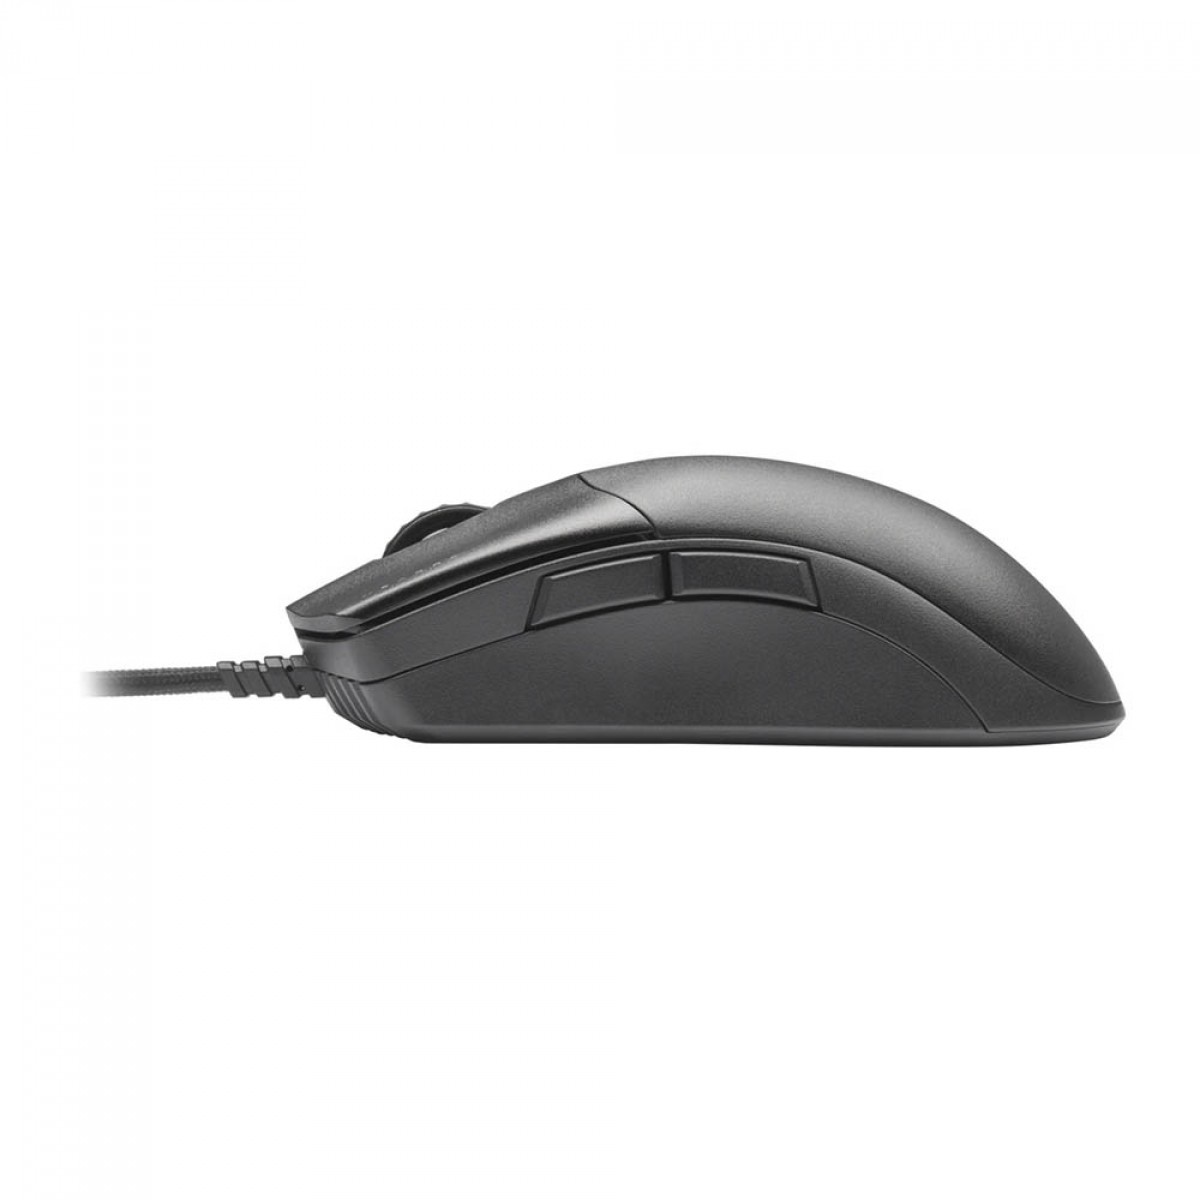 Mouse Gamer Corsair Sabre Pro, 18000 DPI, 6 Botões, Black, CH-9303101-NA